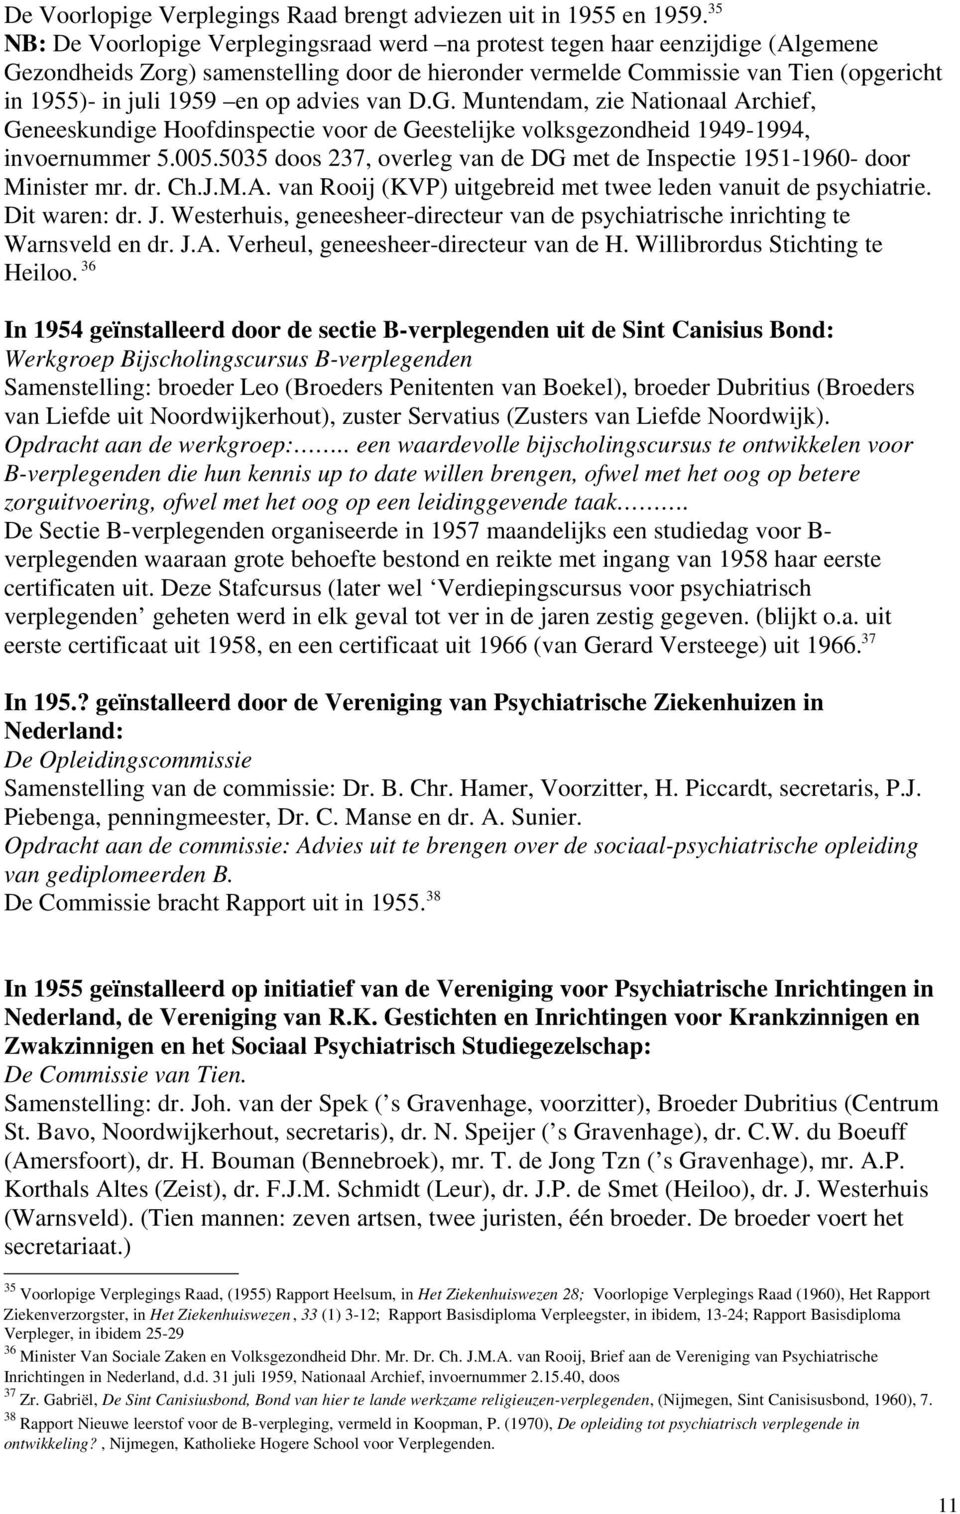 op advies van D.G. Muntendam, zie Nationaal Archief, Geneeskundige Hoofdinspectie voor de Geestelijke volksgezondheid 1949-1994, invoernummer 5.005.